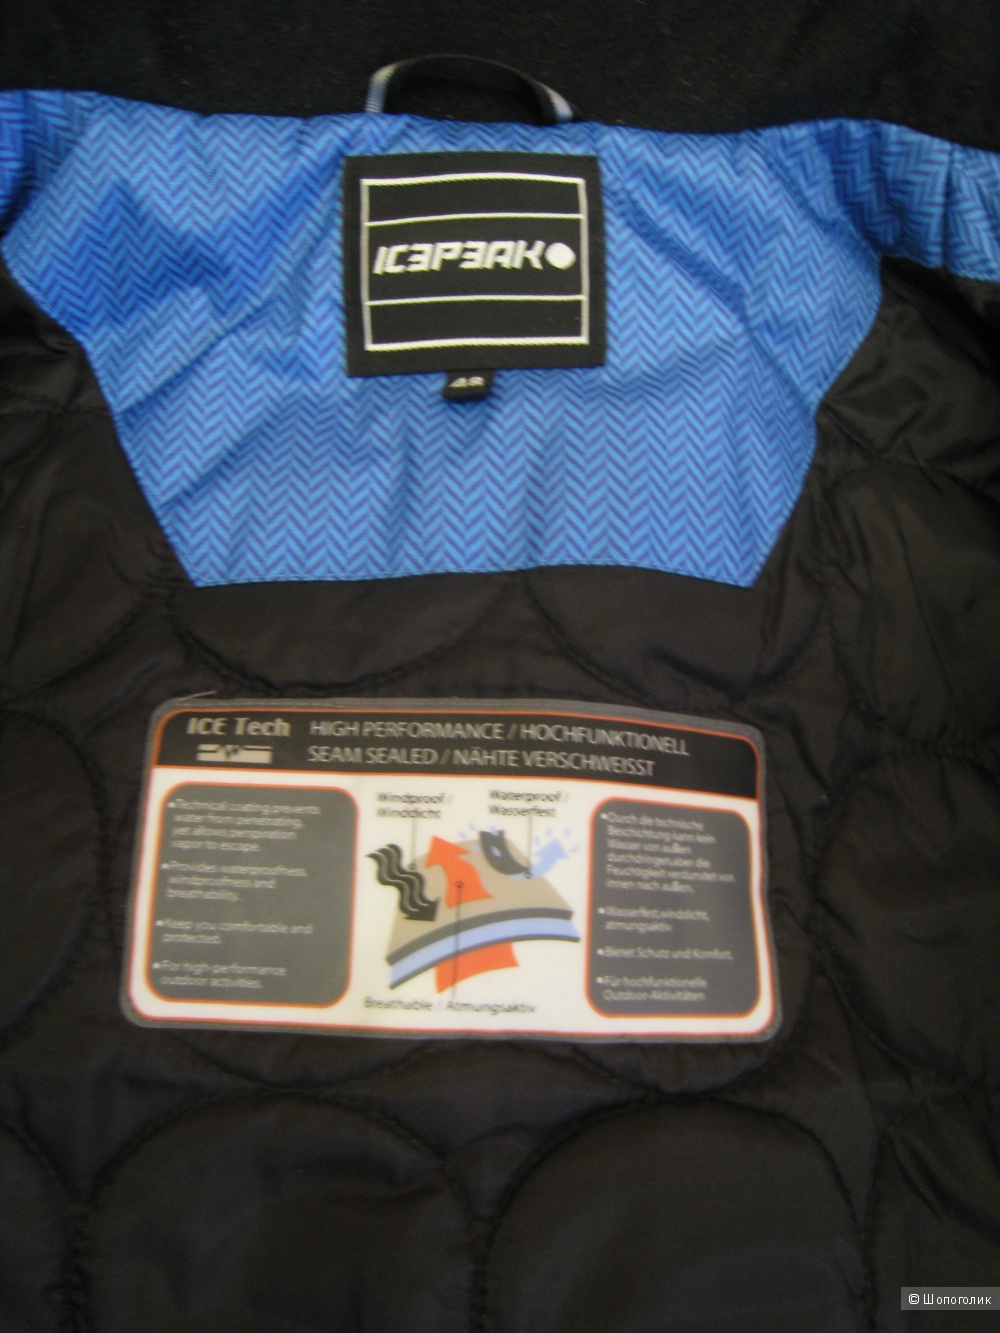 Мужская горнолыжная куртка Icepeak, 48